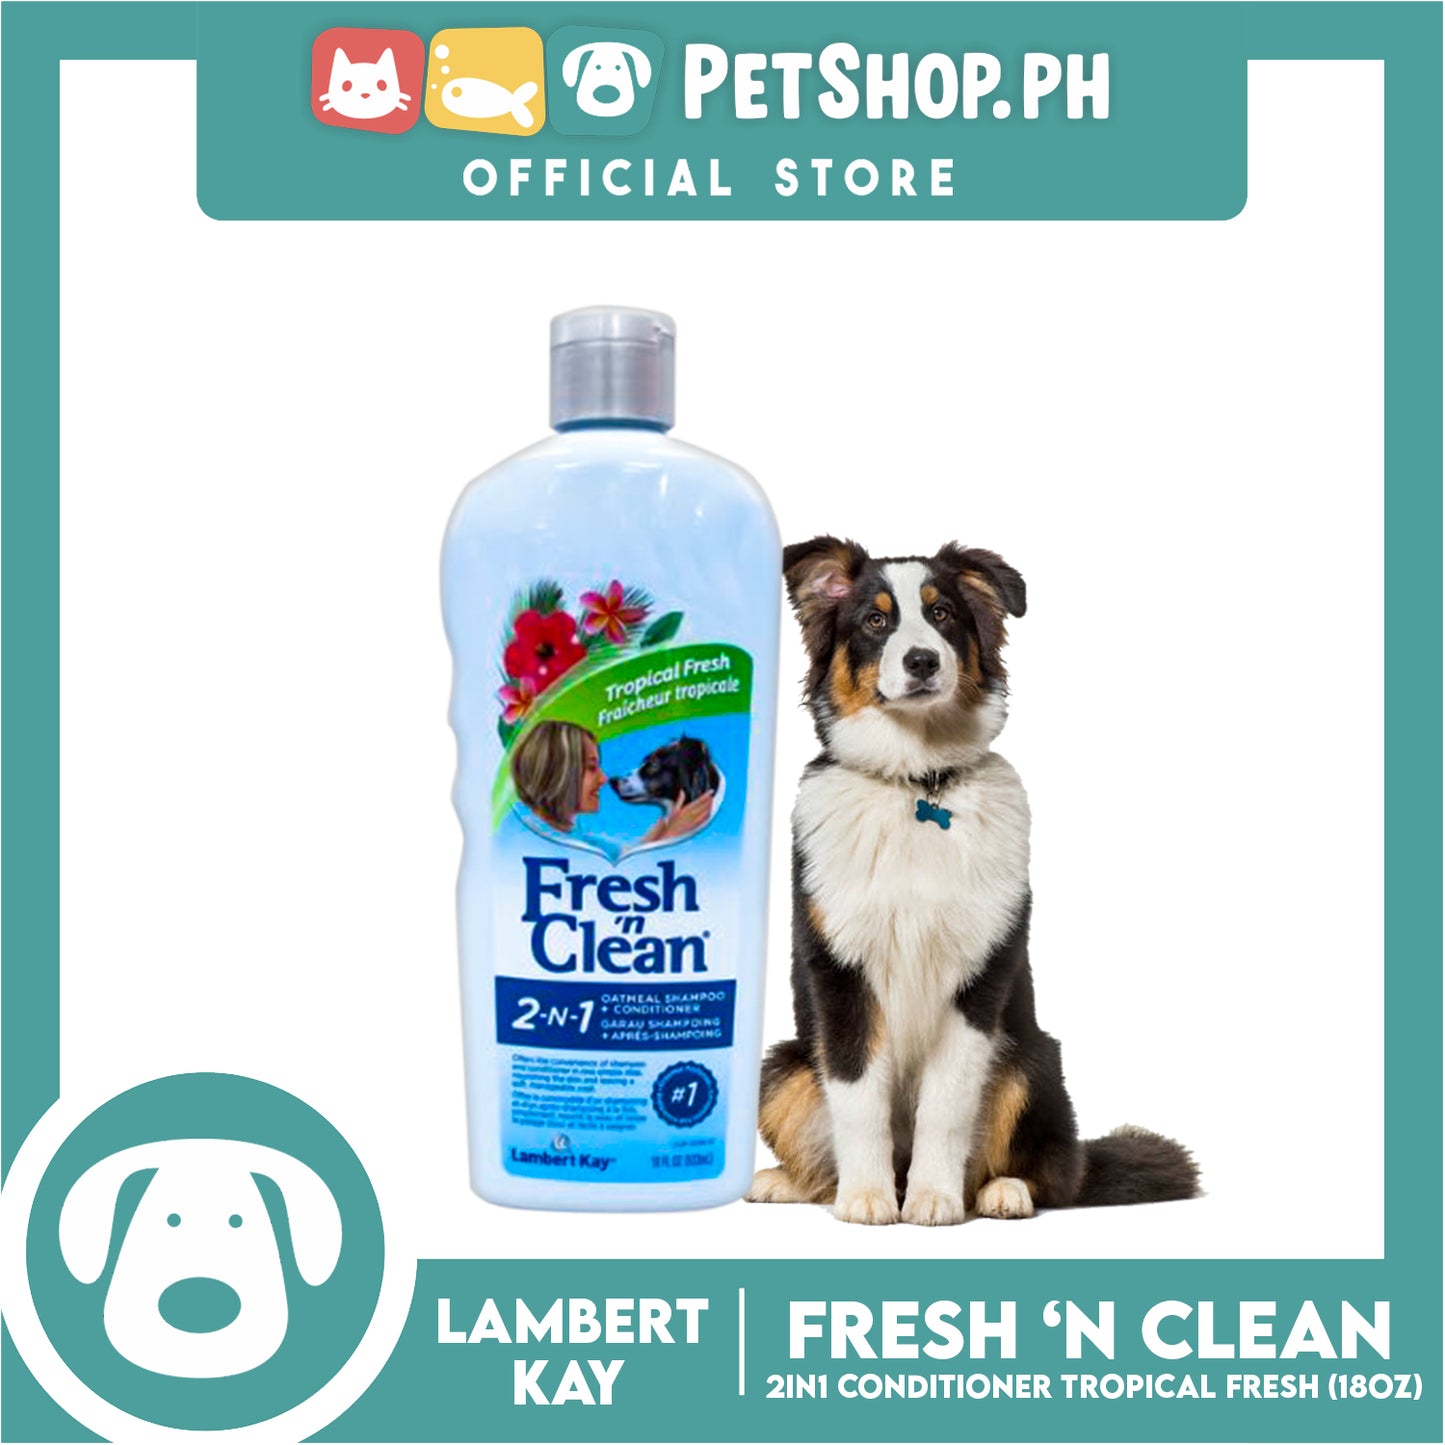 Lambert Kay Fresh 'N Clean 2-in-1 Oatmeal Dog Shampoo and Conditioner 18oz (Tropical Fresh)